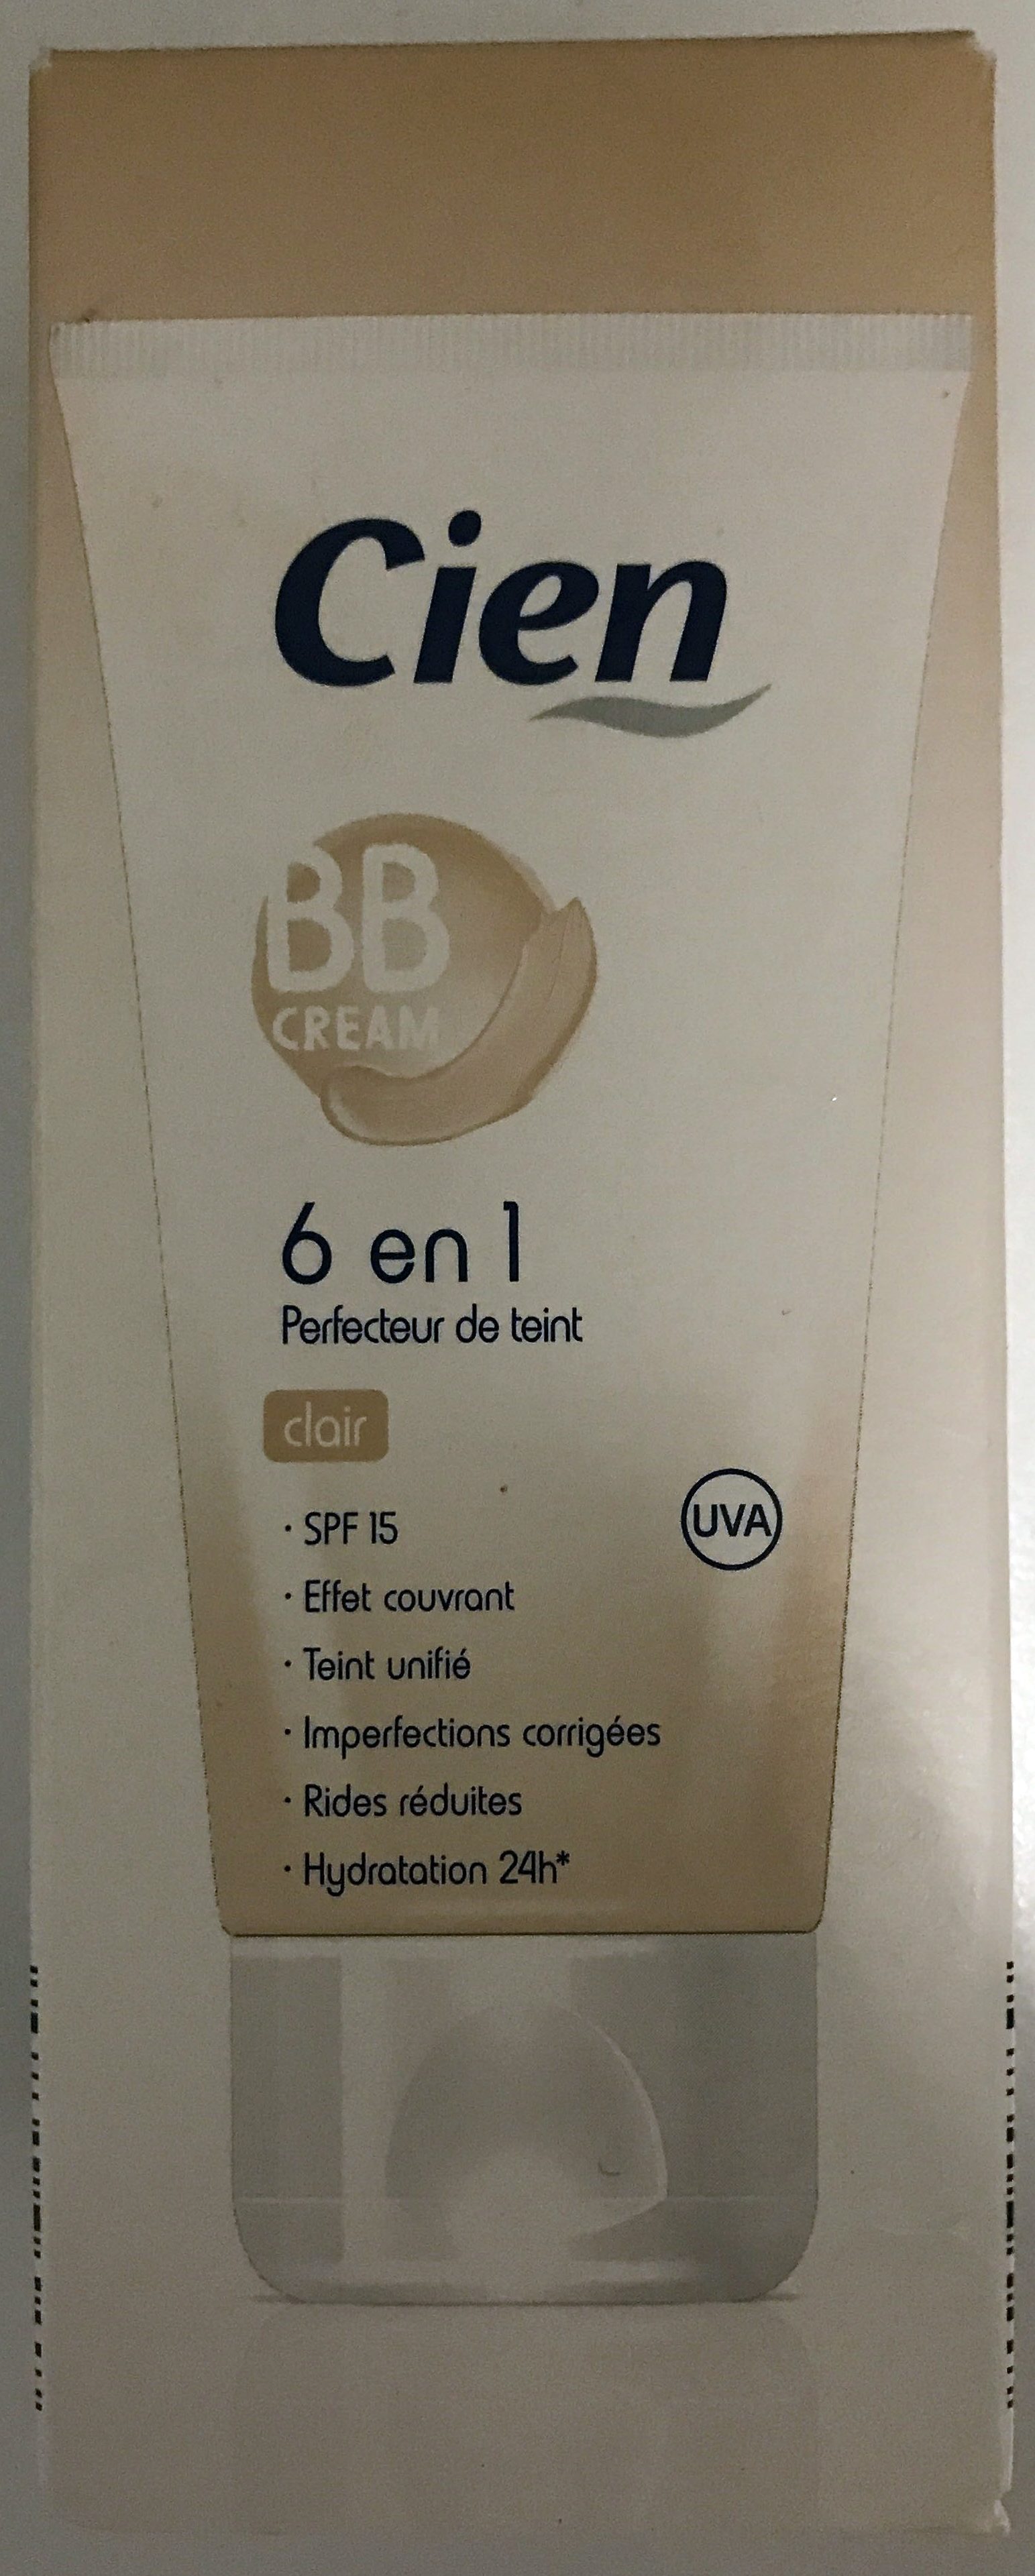 BB Cream 6 en 1 clair - Product - fr